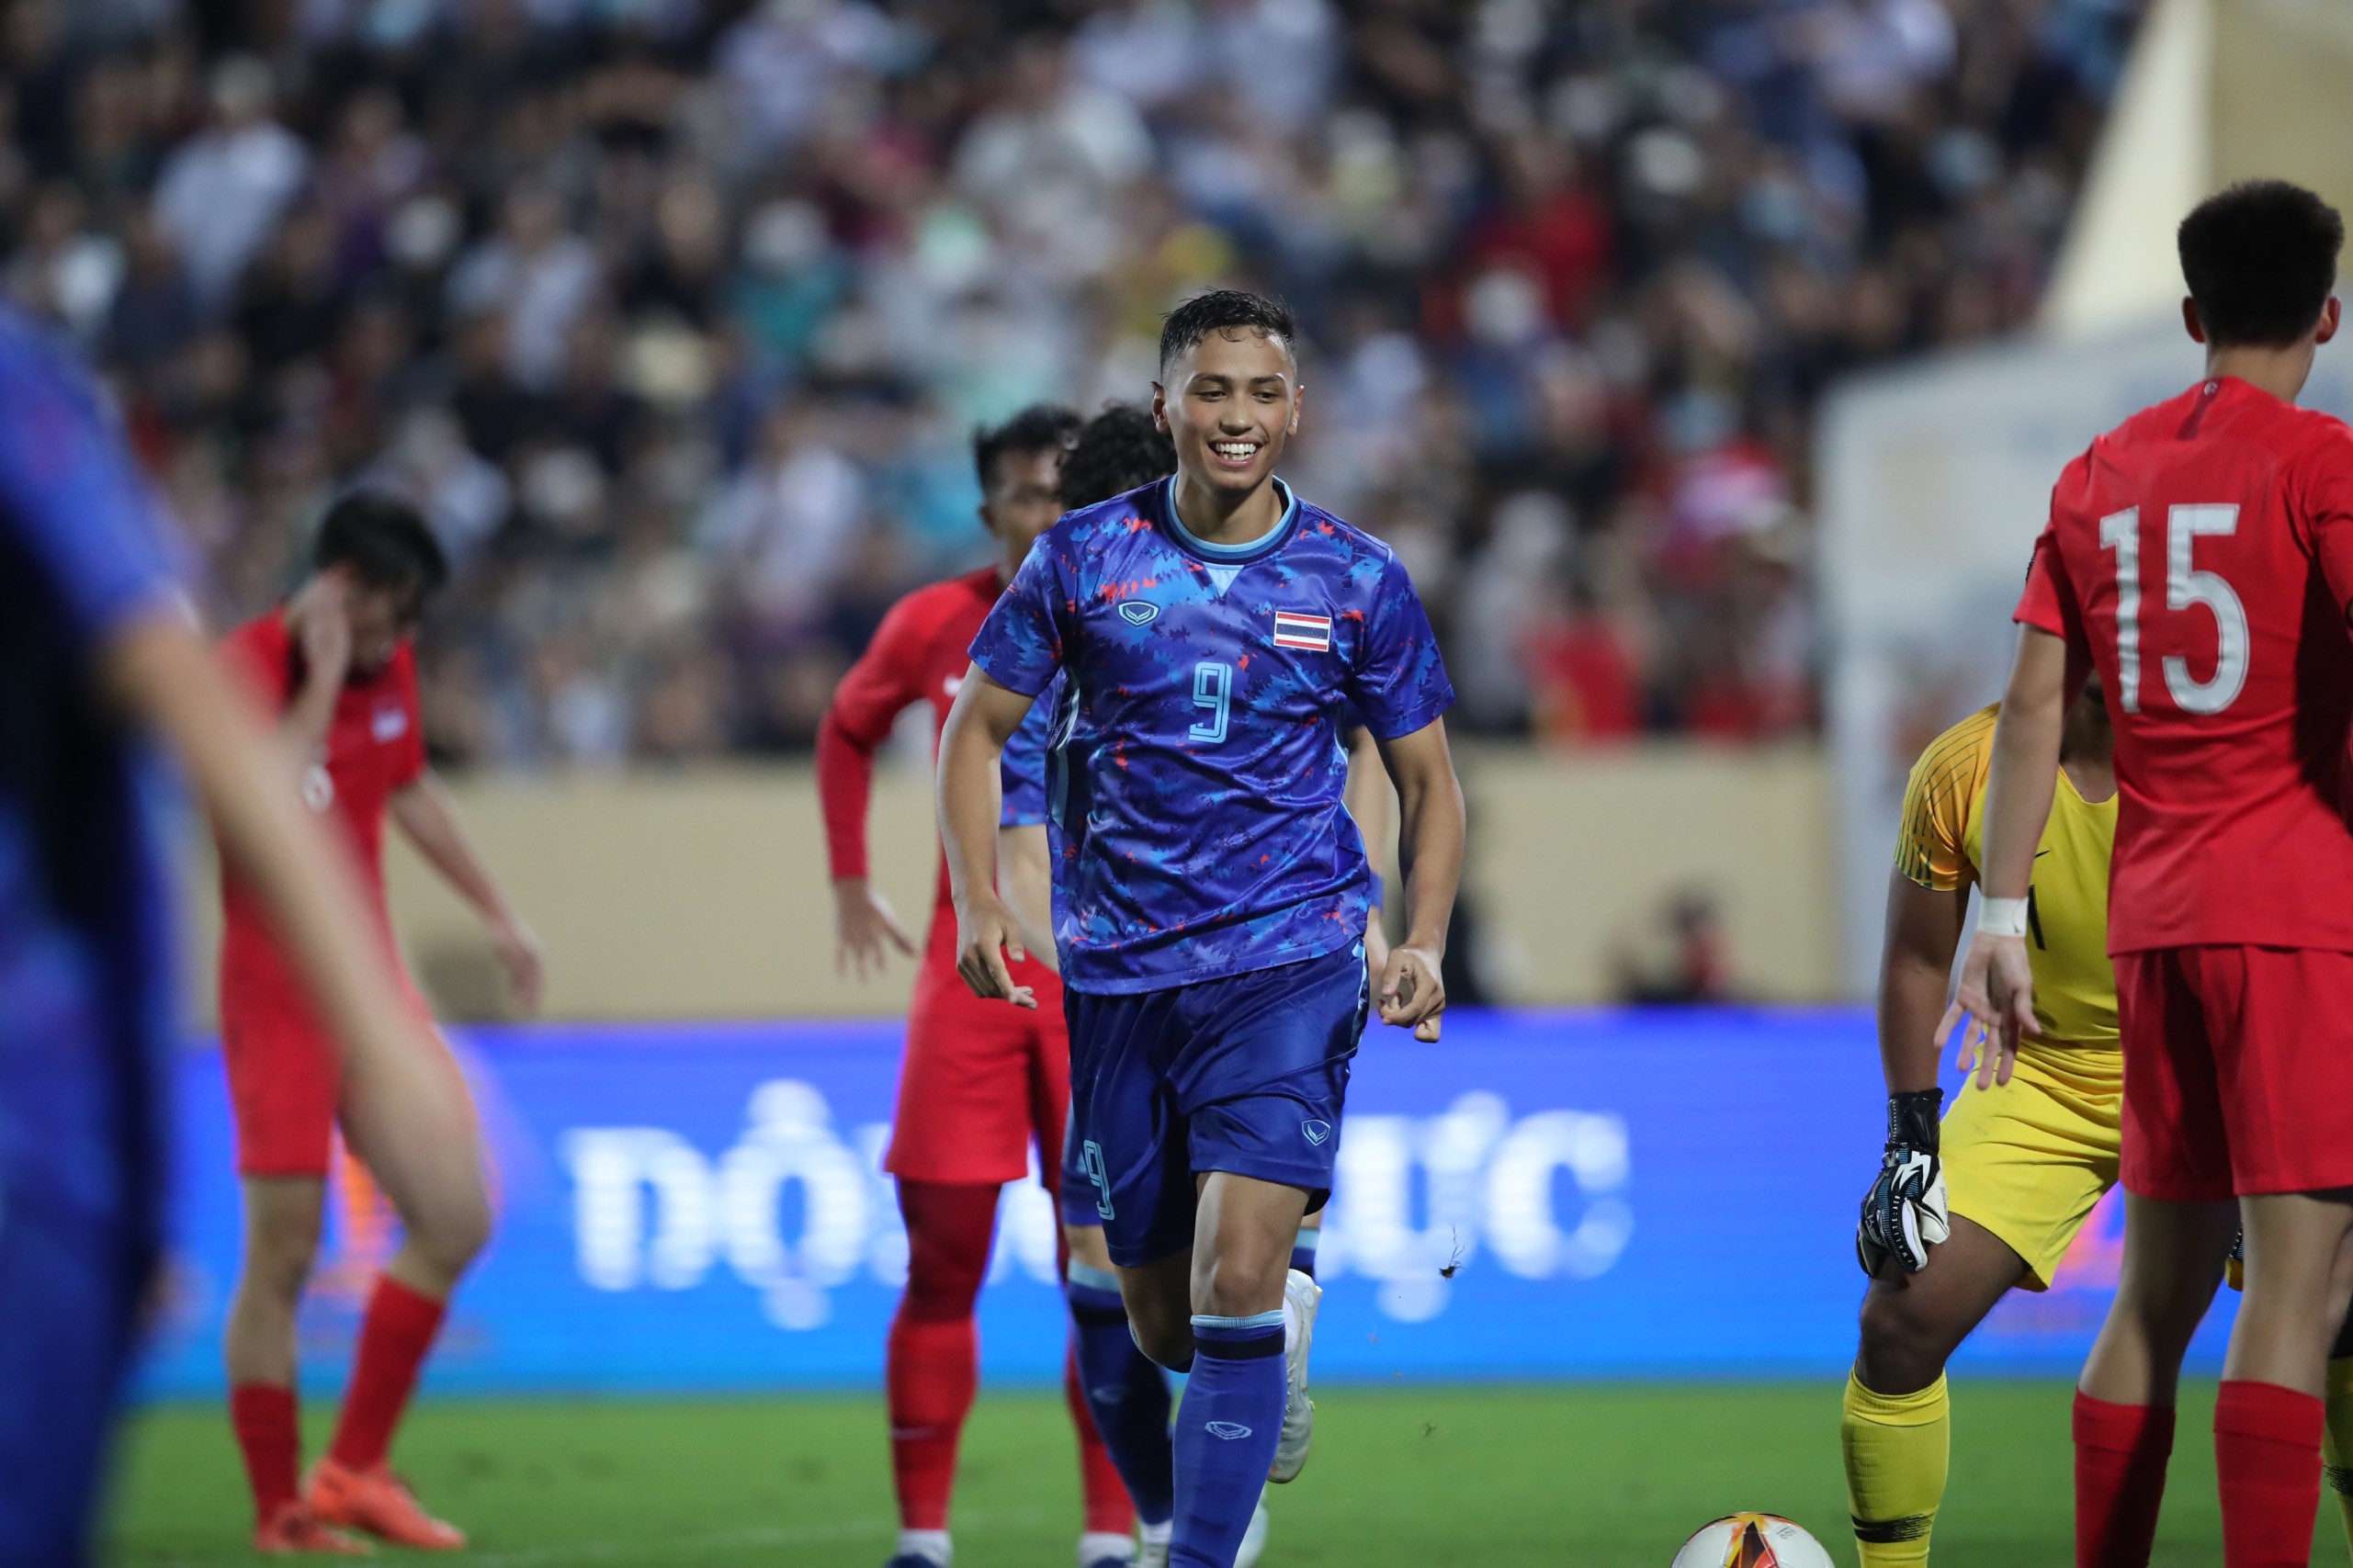 U23 Thái Lan dễ dàng có thêm 4 bàn thắng, trong đó có 1 pha phản lưới của U23 Singapore để giành thắng lợi với tỉ số rất đậm 5-0 